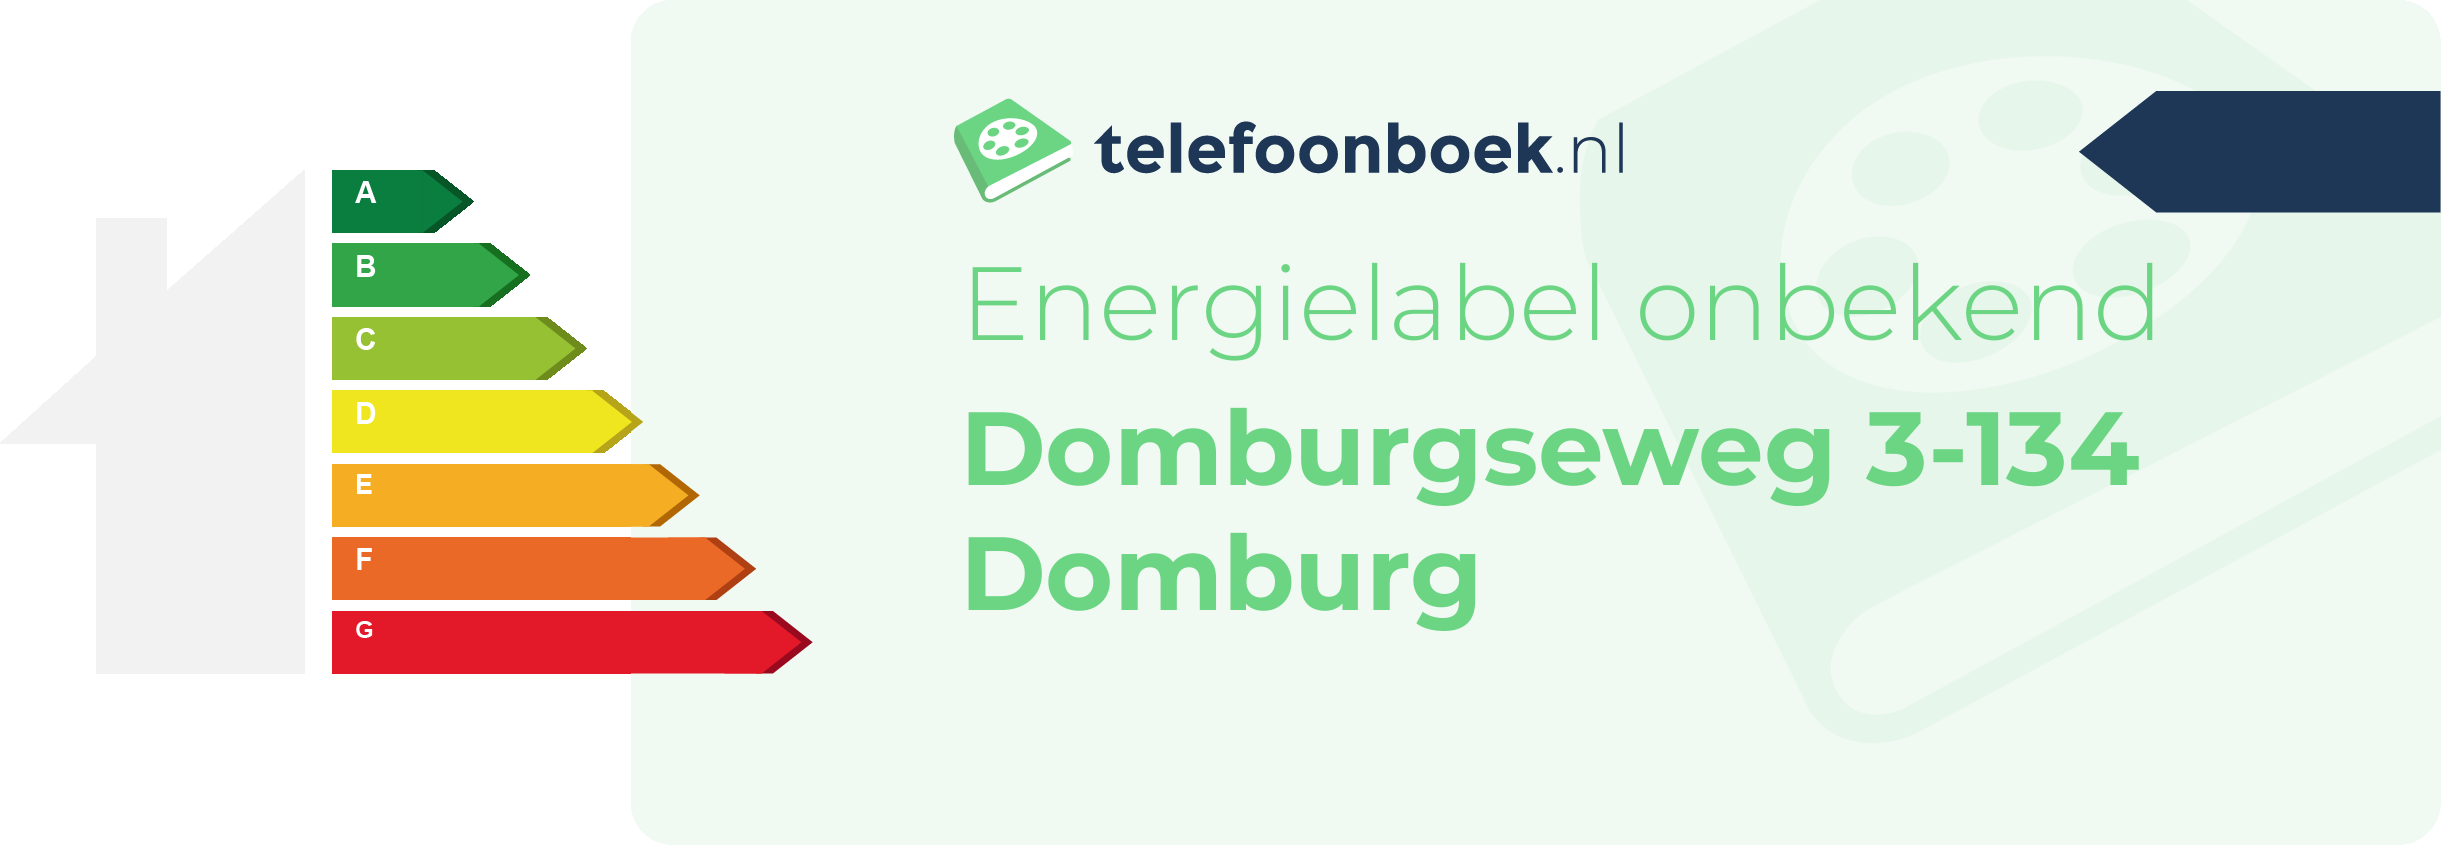 Energielabel Domburgseweg 3-134 Domburg